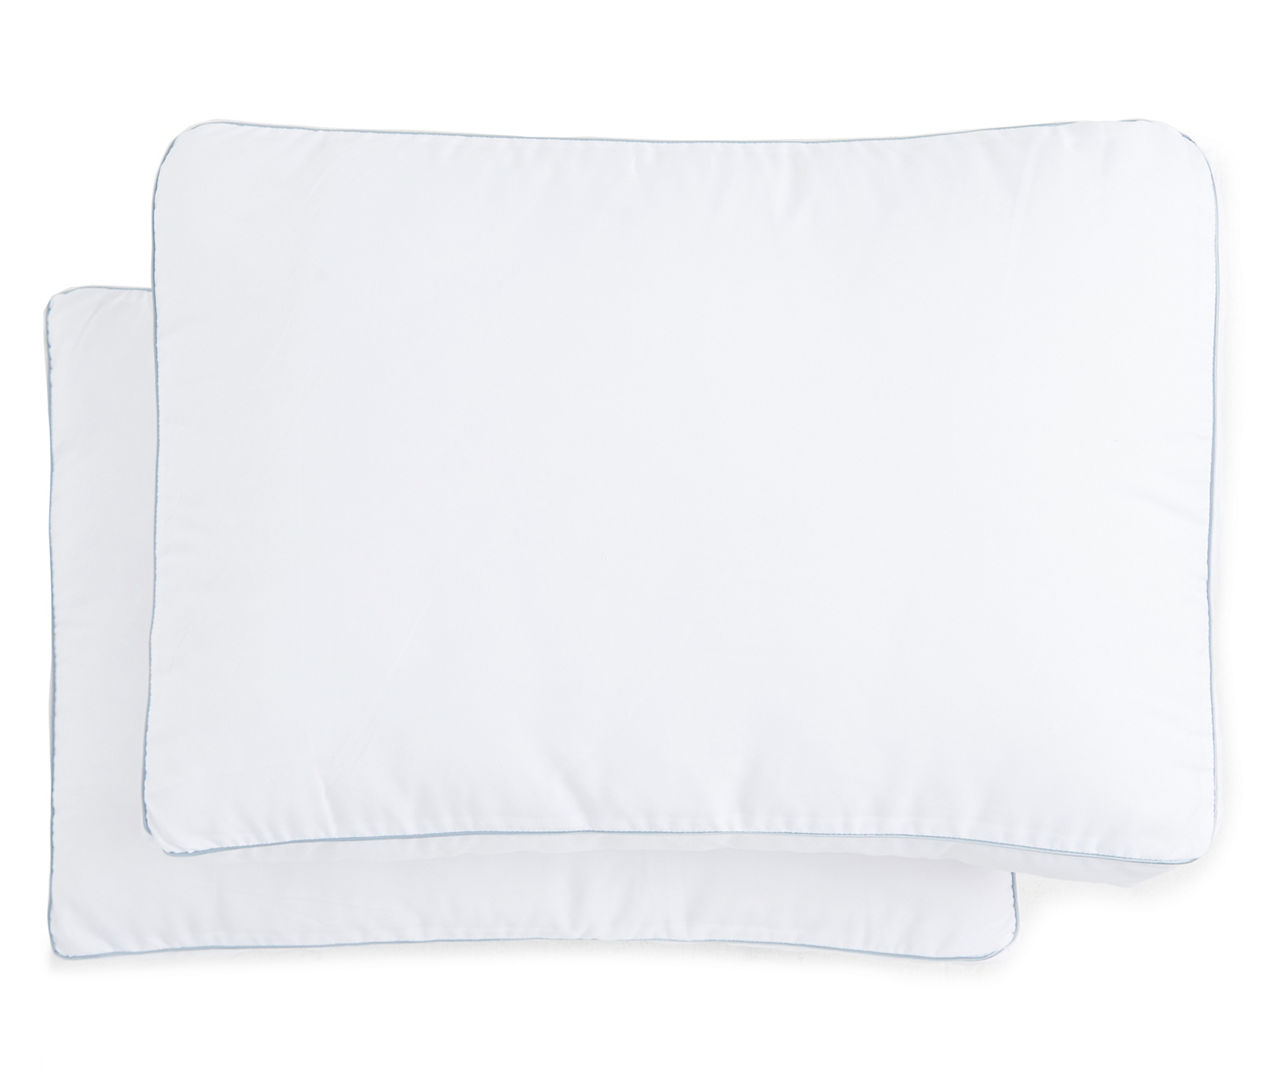 Serta Perfect Sleeper Regal Comfort Standard/Queen Pillows, 2-Pack ...